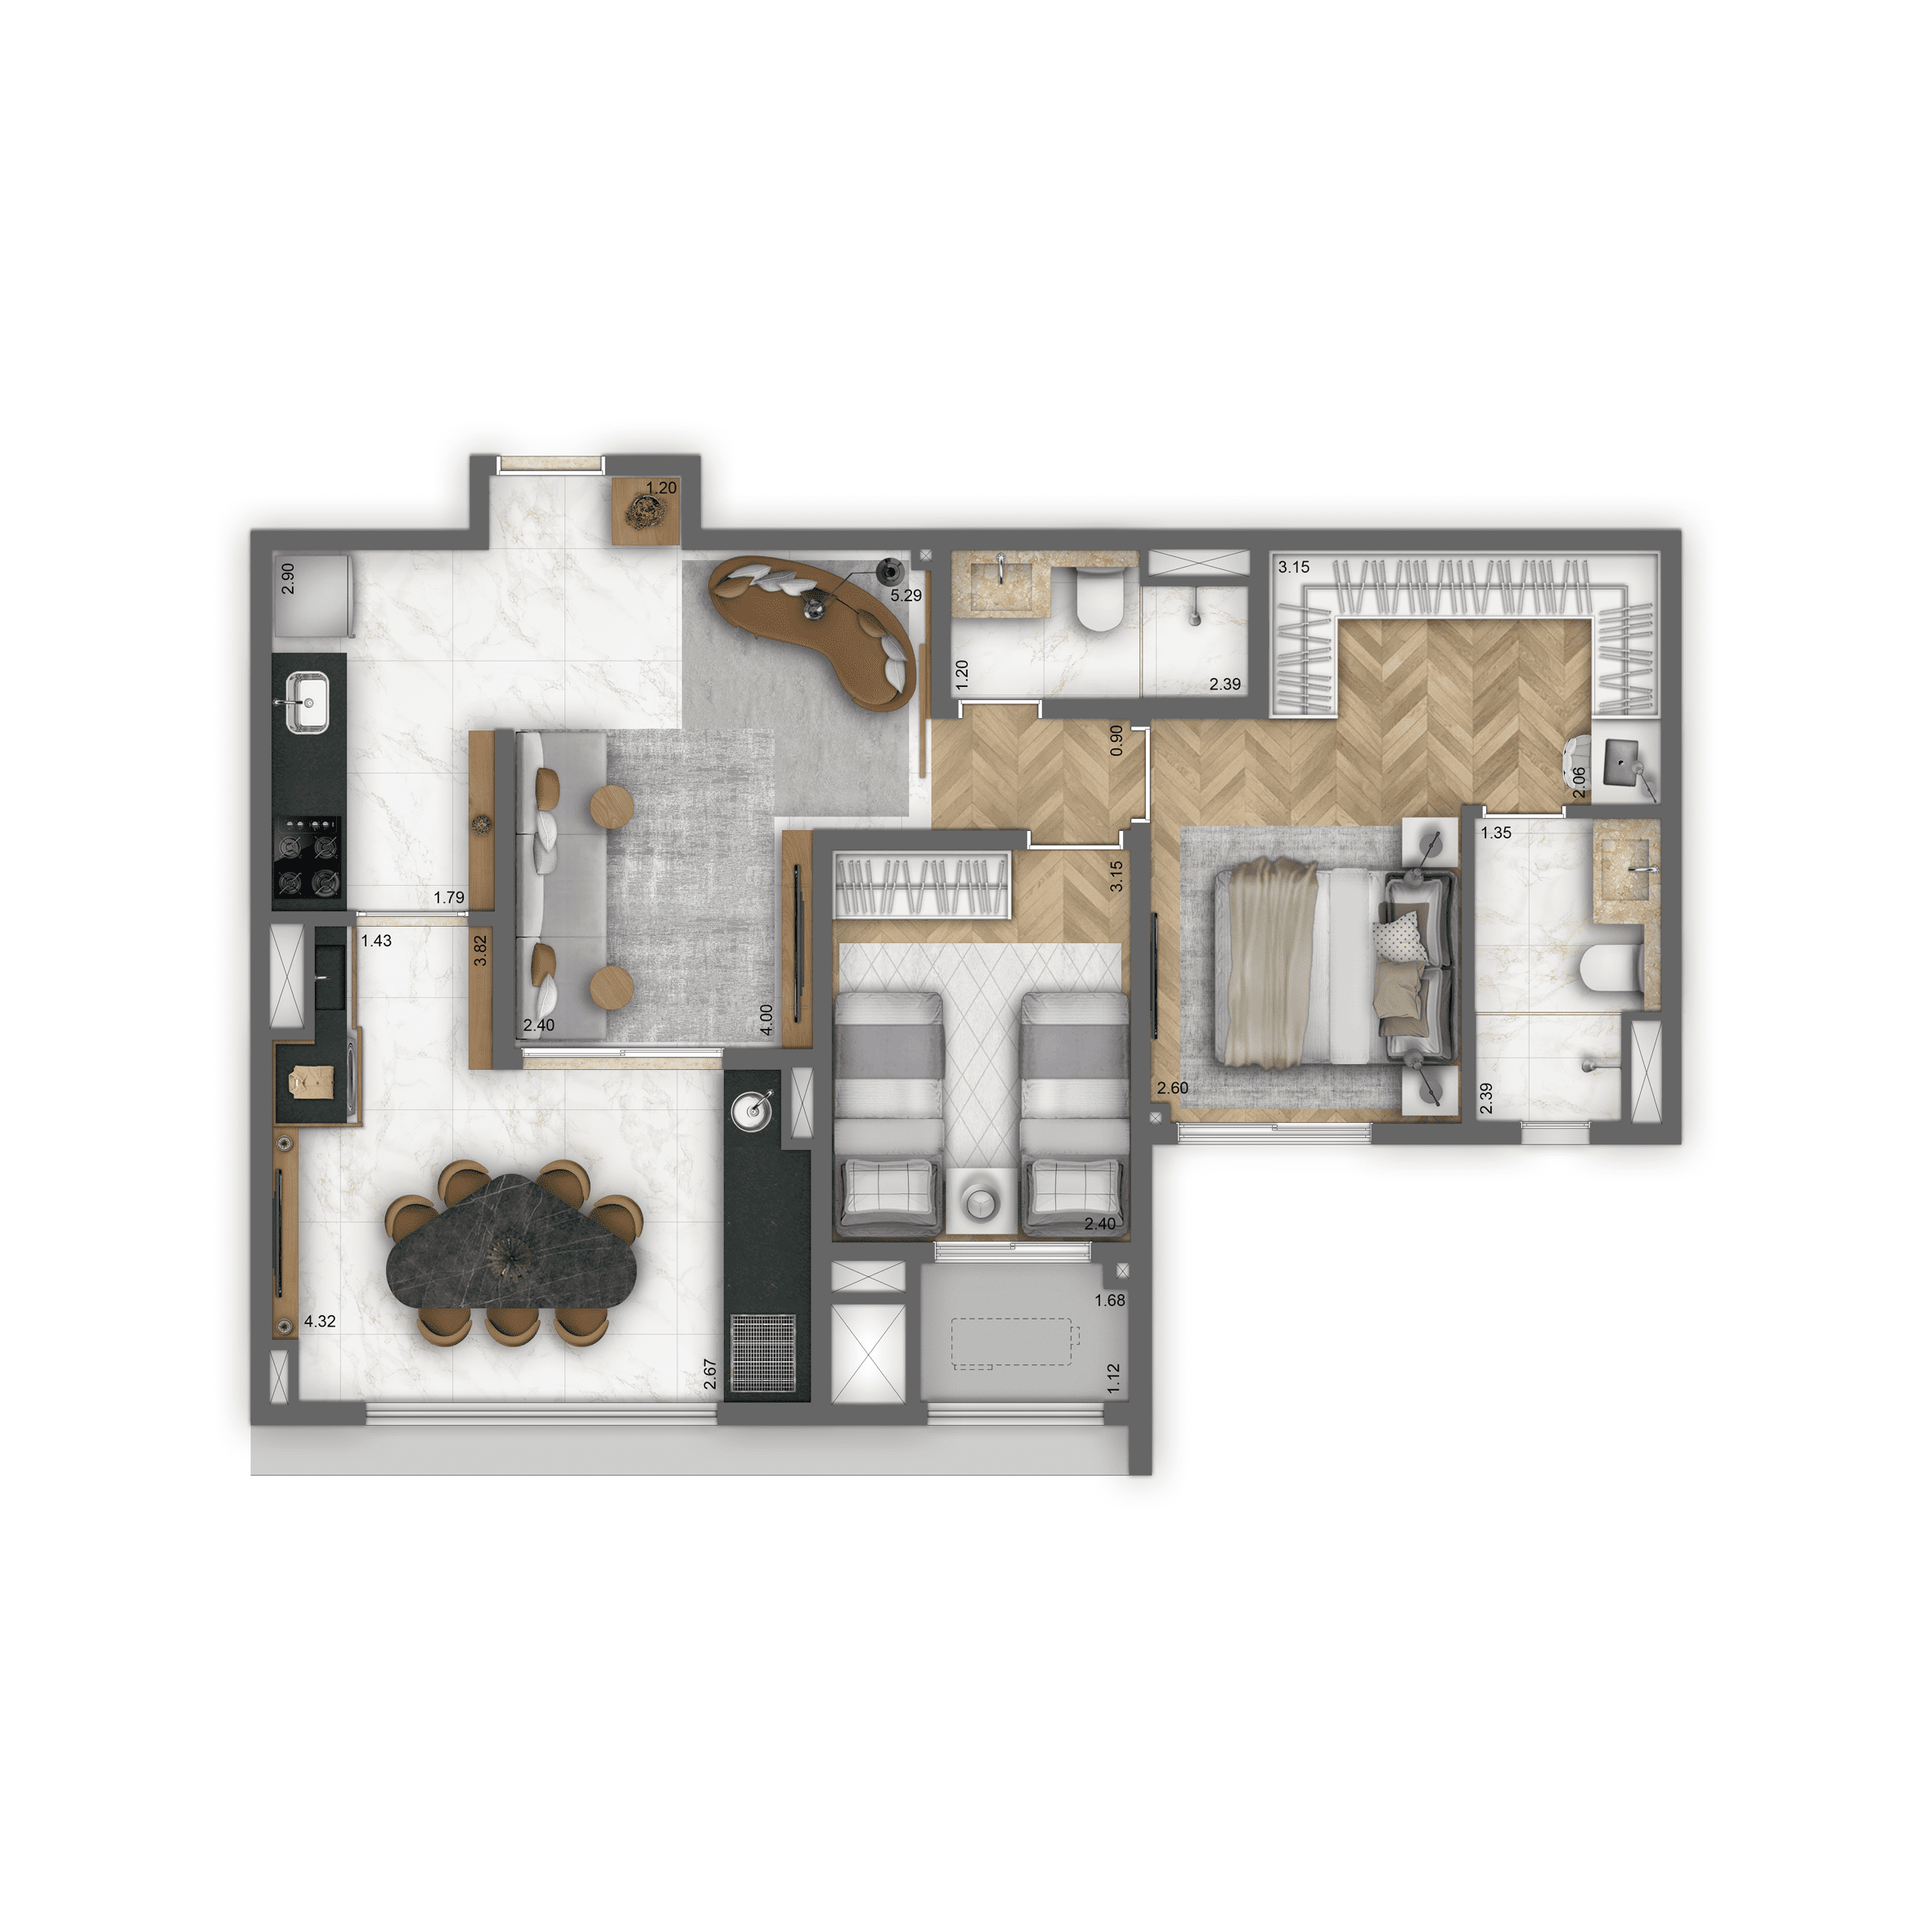 Planta-tipo 71 m² | 2 dorms. (1 suíte)